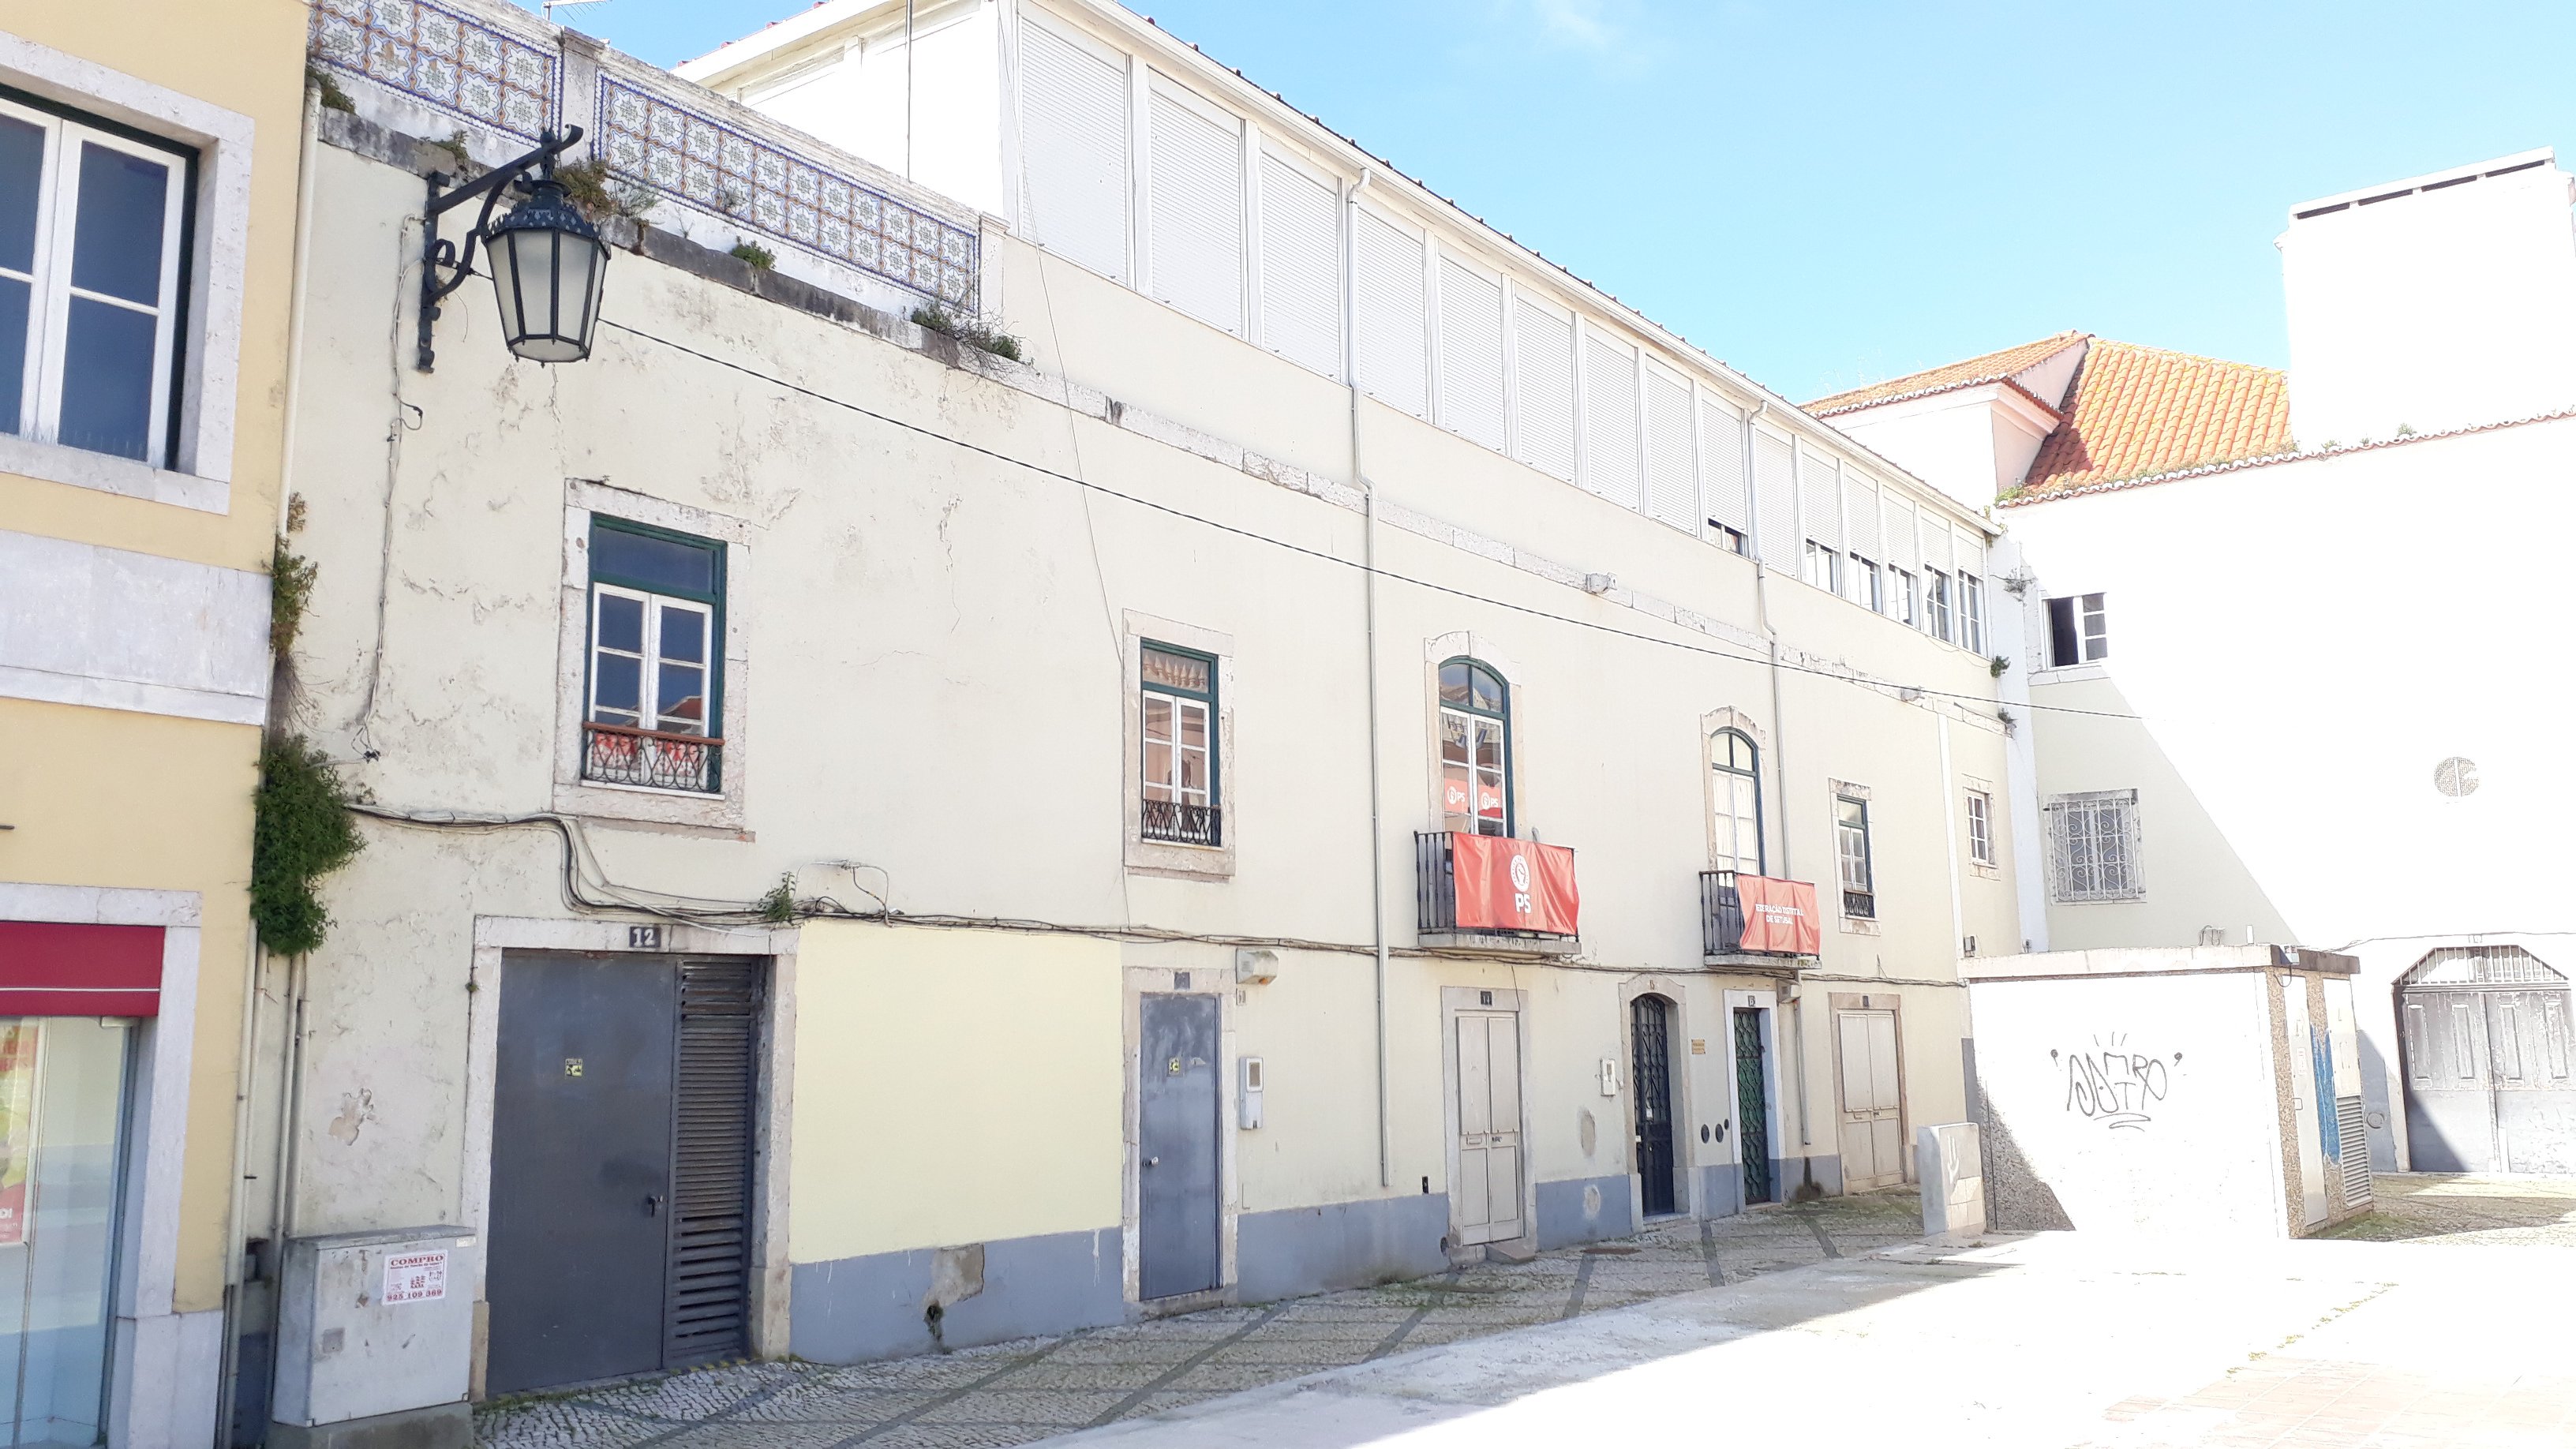 Foto 7 Edifício de comércio e serviços na Av. Luísa Todi, em Setúbal